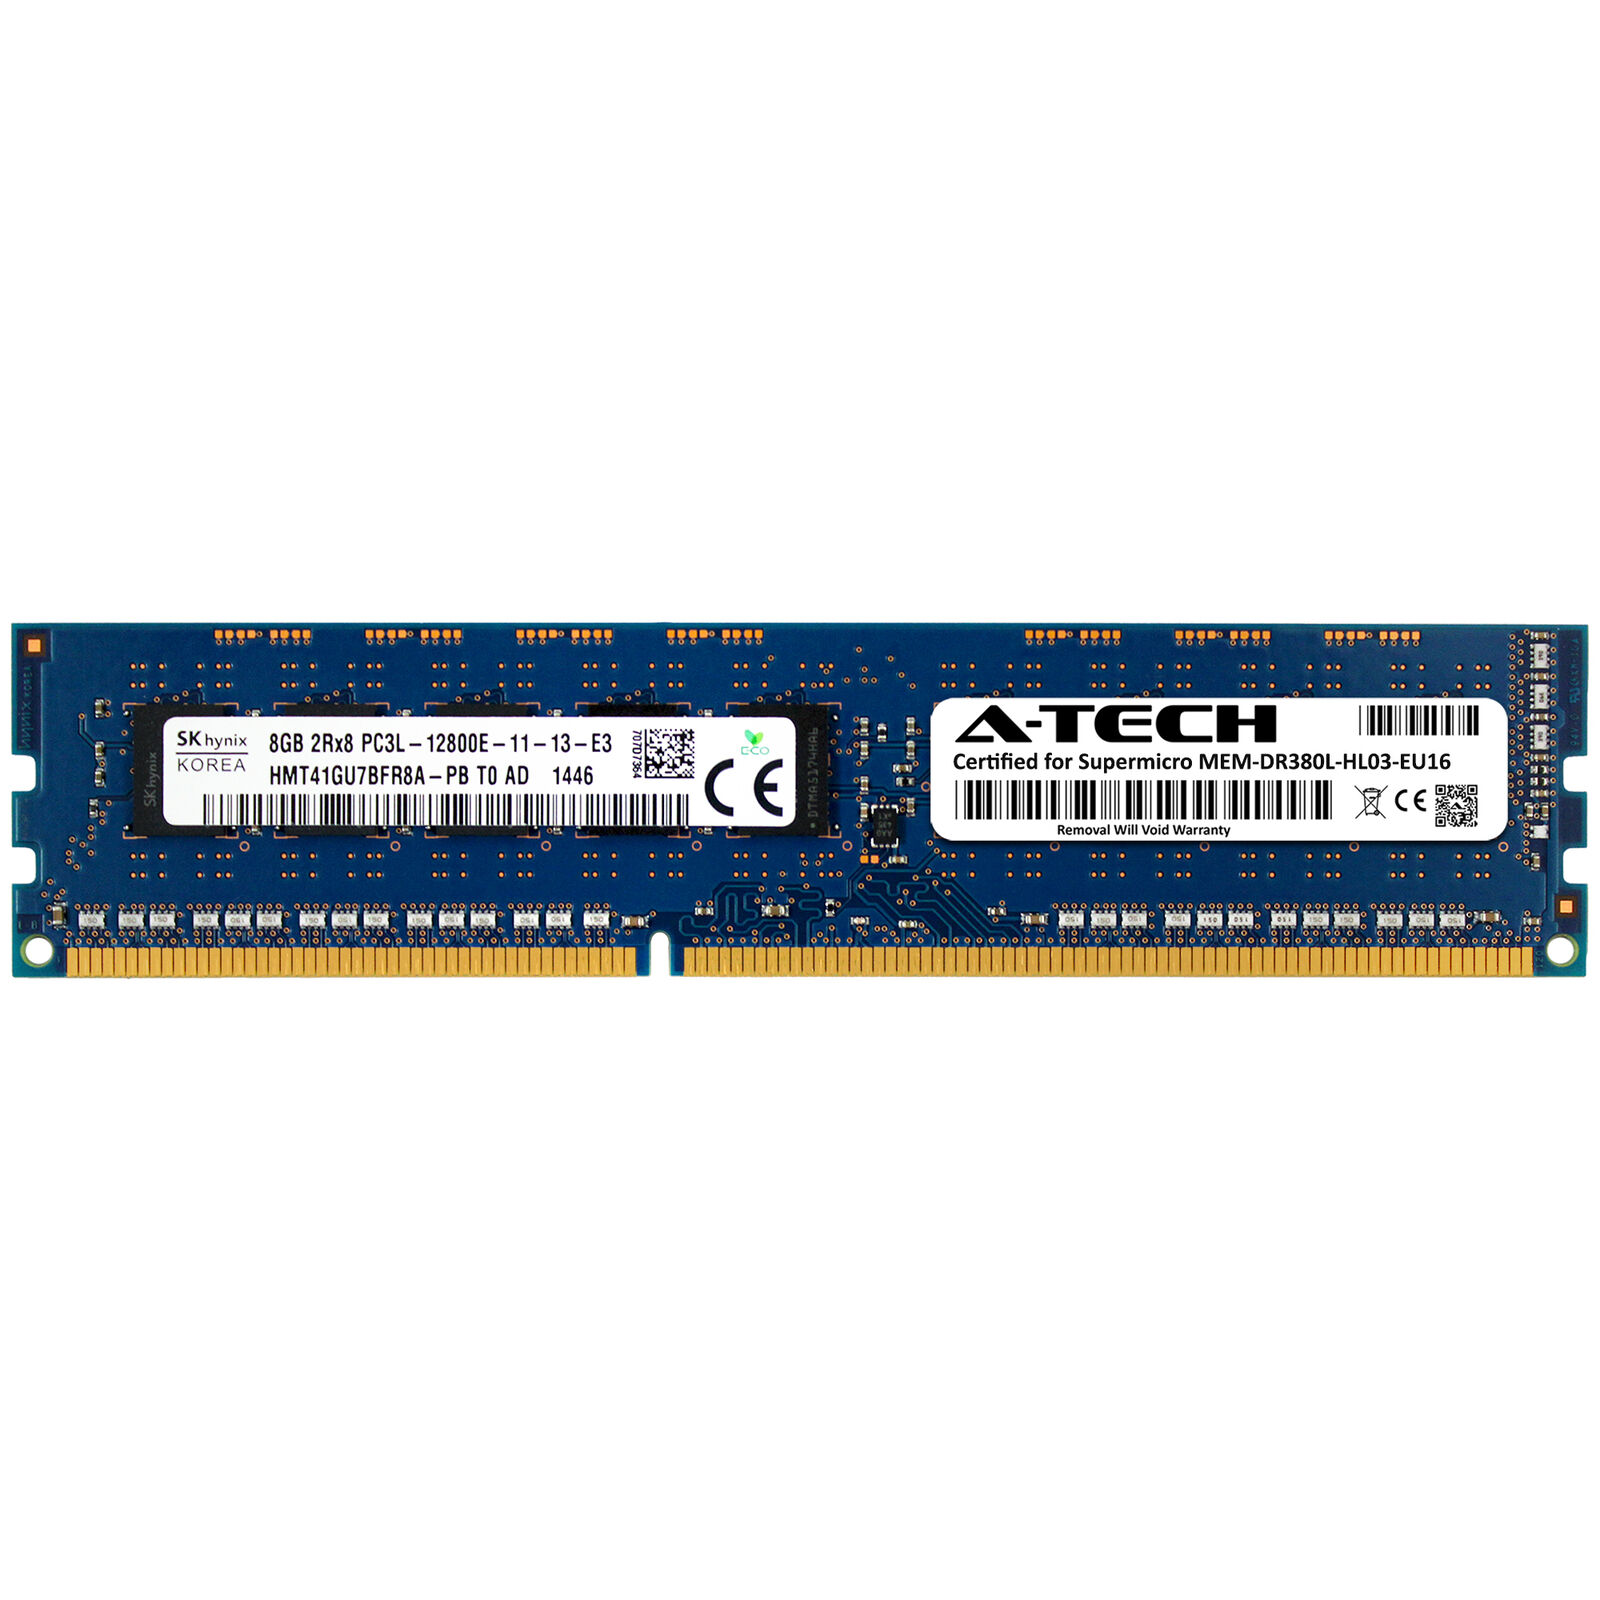 8GB PC3L-12800E ECC Supermicro MEM-DR380L-HL03-EU16 Equivalent Server Memory RAM